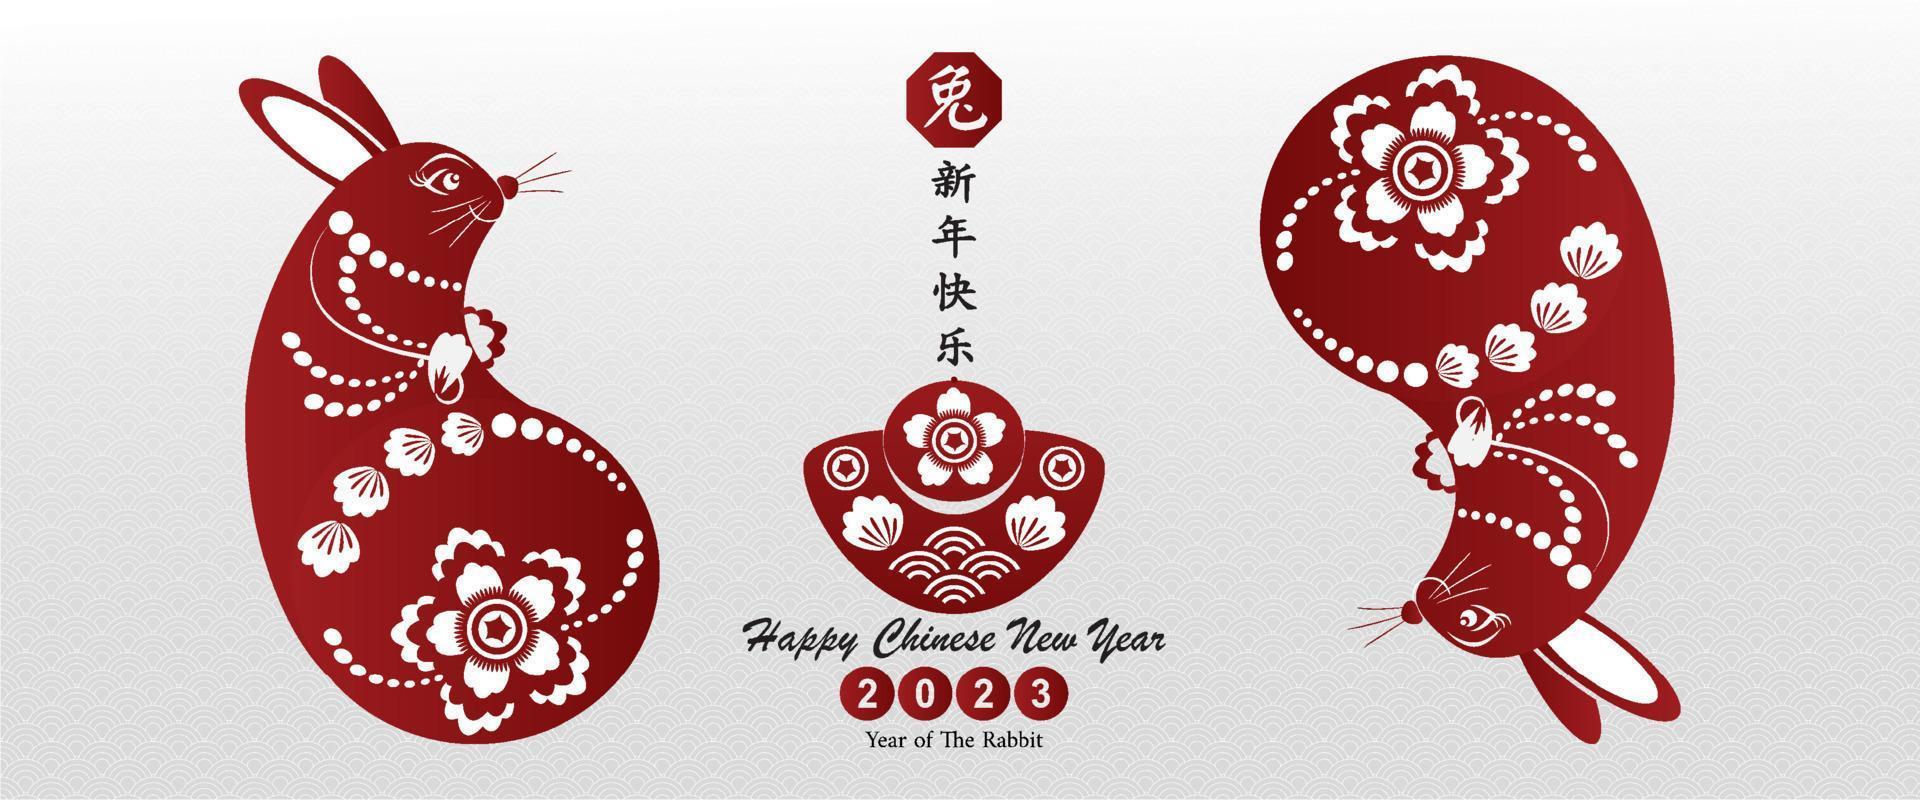 feliz ano novo chinês 2023 ano do personagem coelho com estilo asiático. tradução chinesa é ano médio de coelho feliz ano novo chinês. vetor